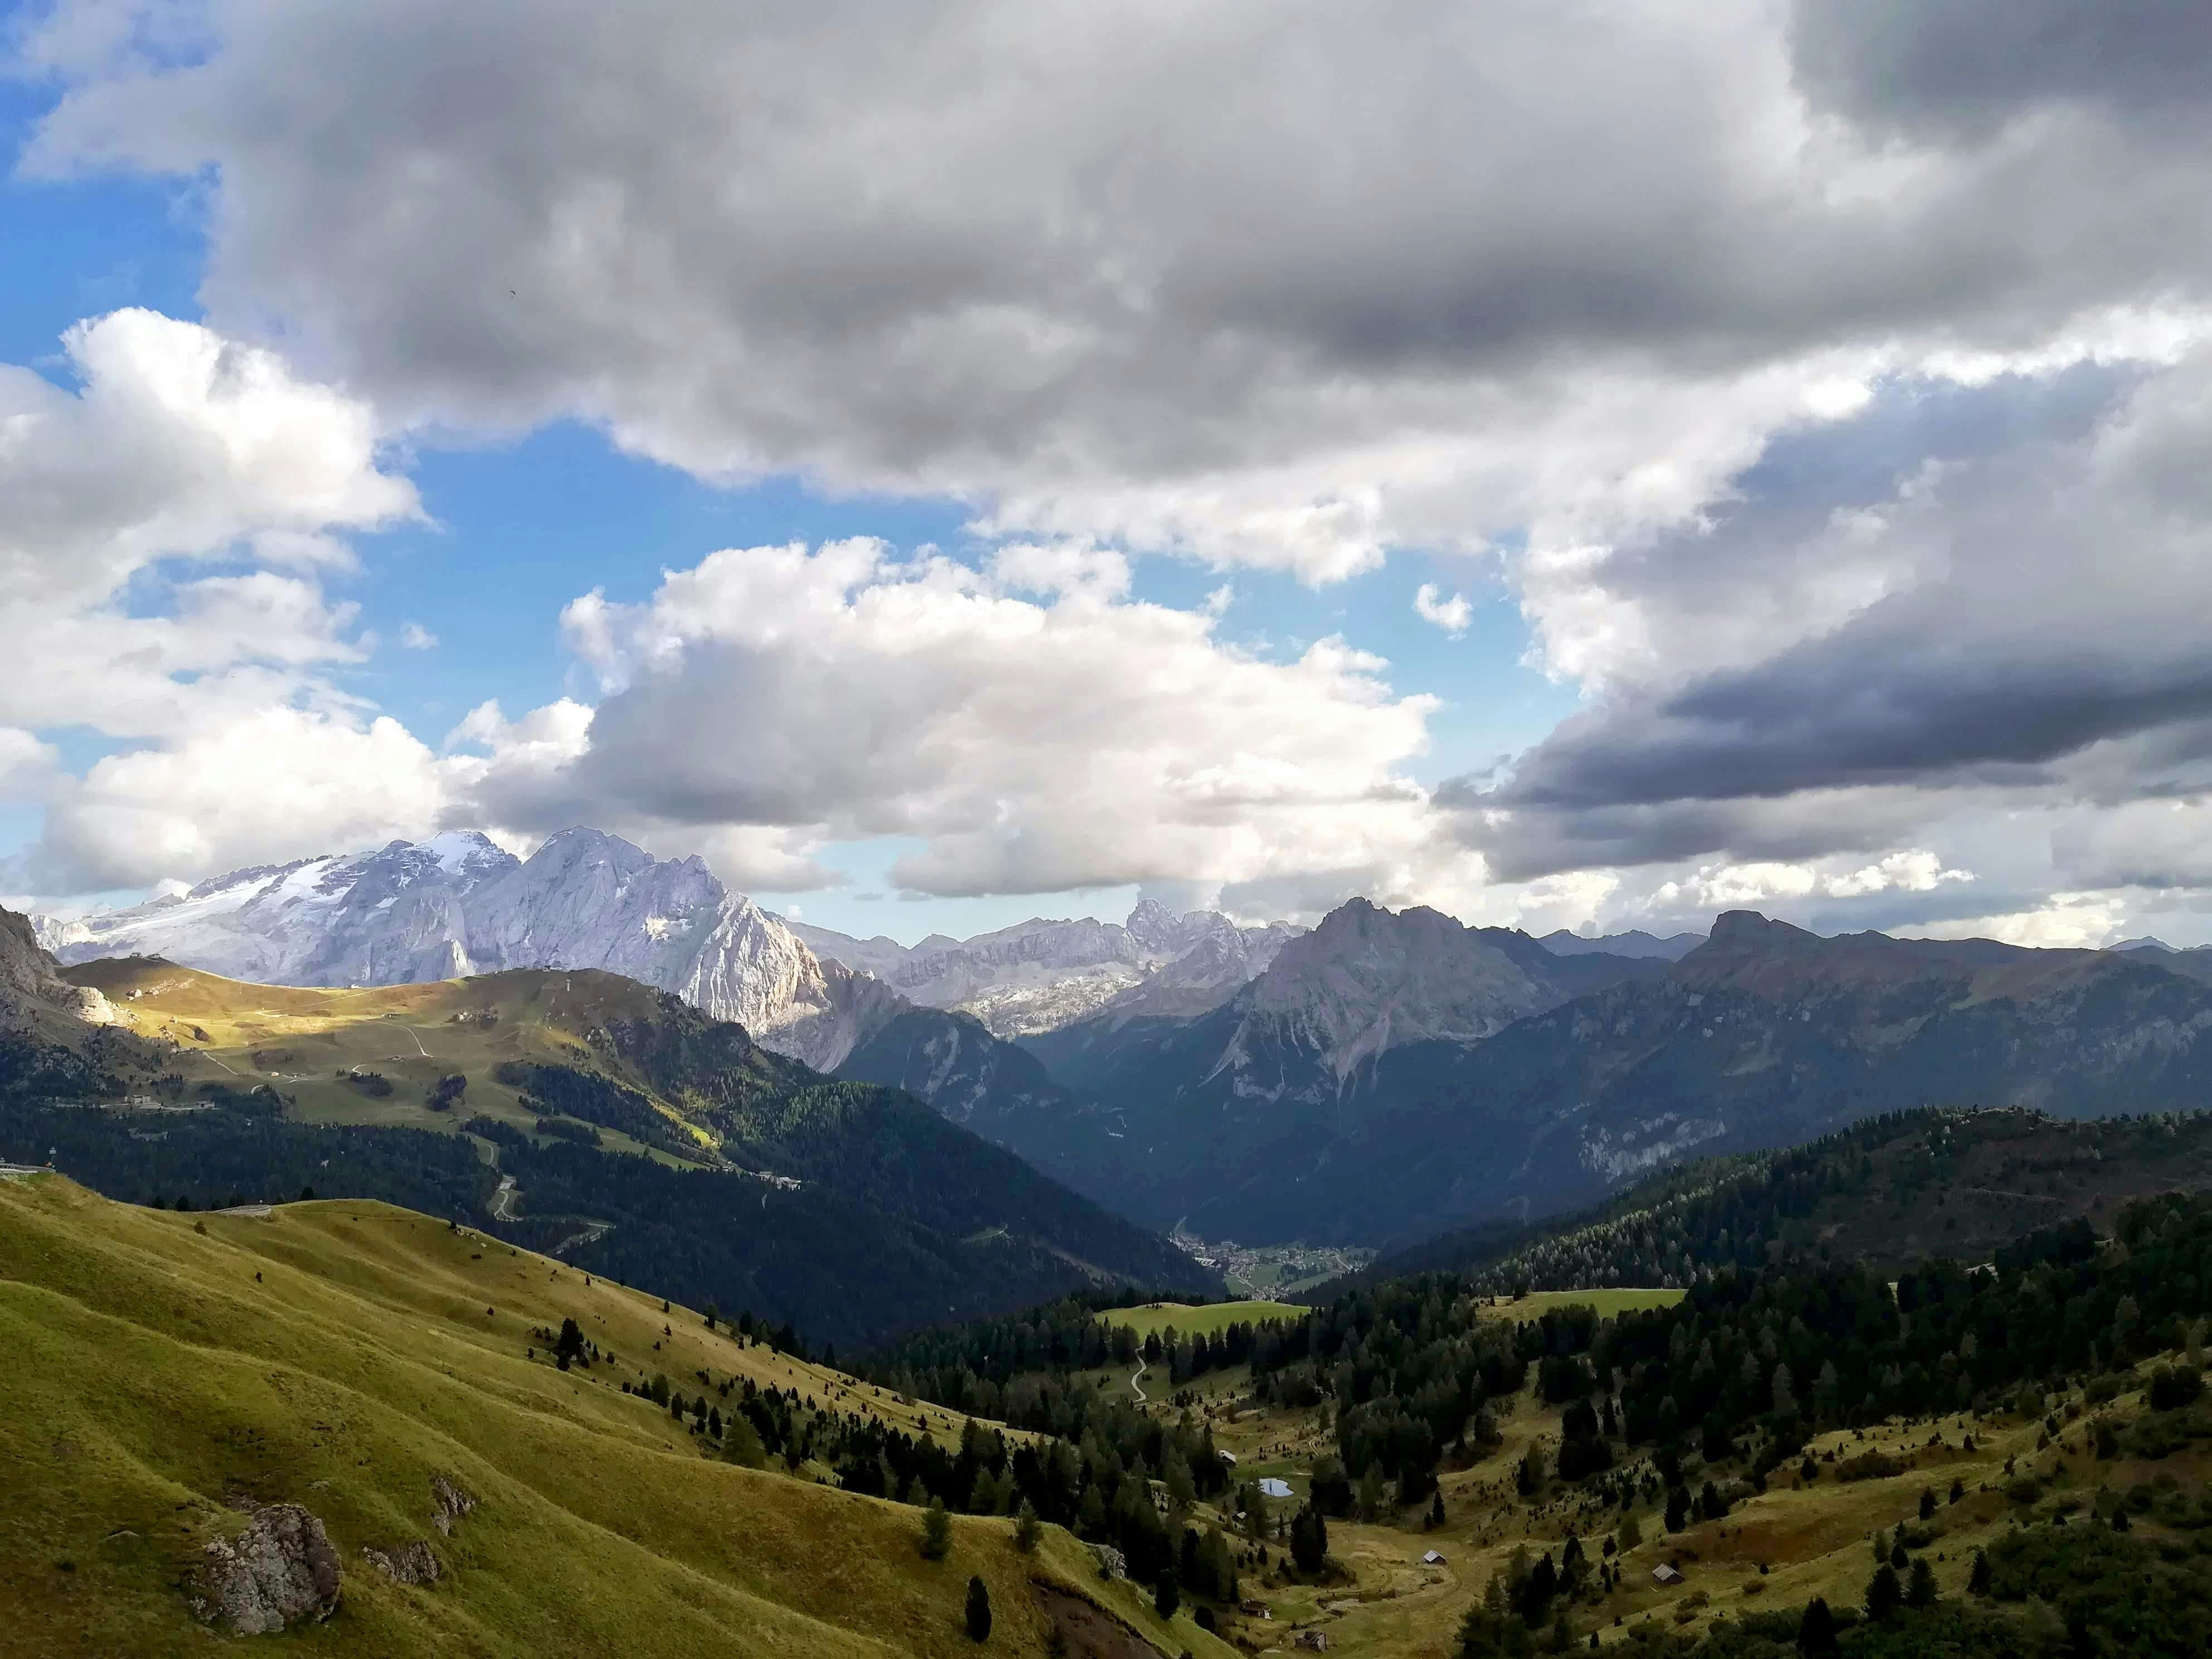 Grand Dolomites Tour to Fiemme, Fassa and Gardena Valleys